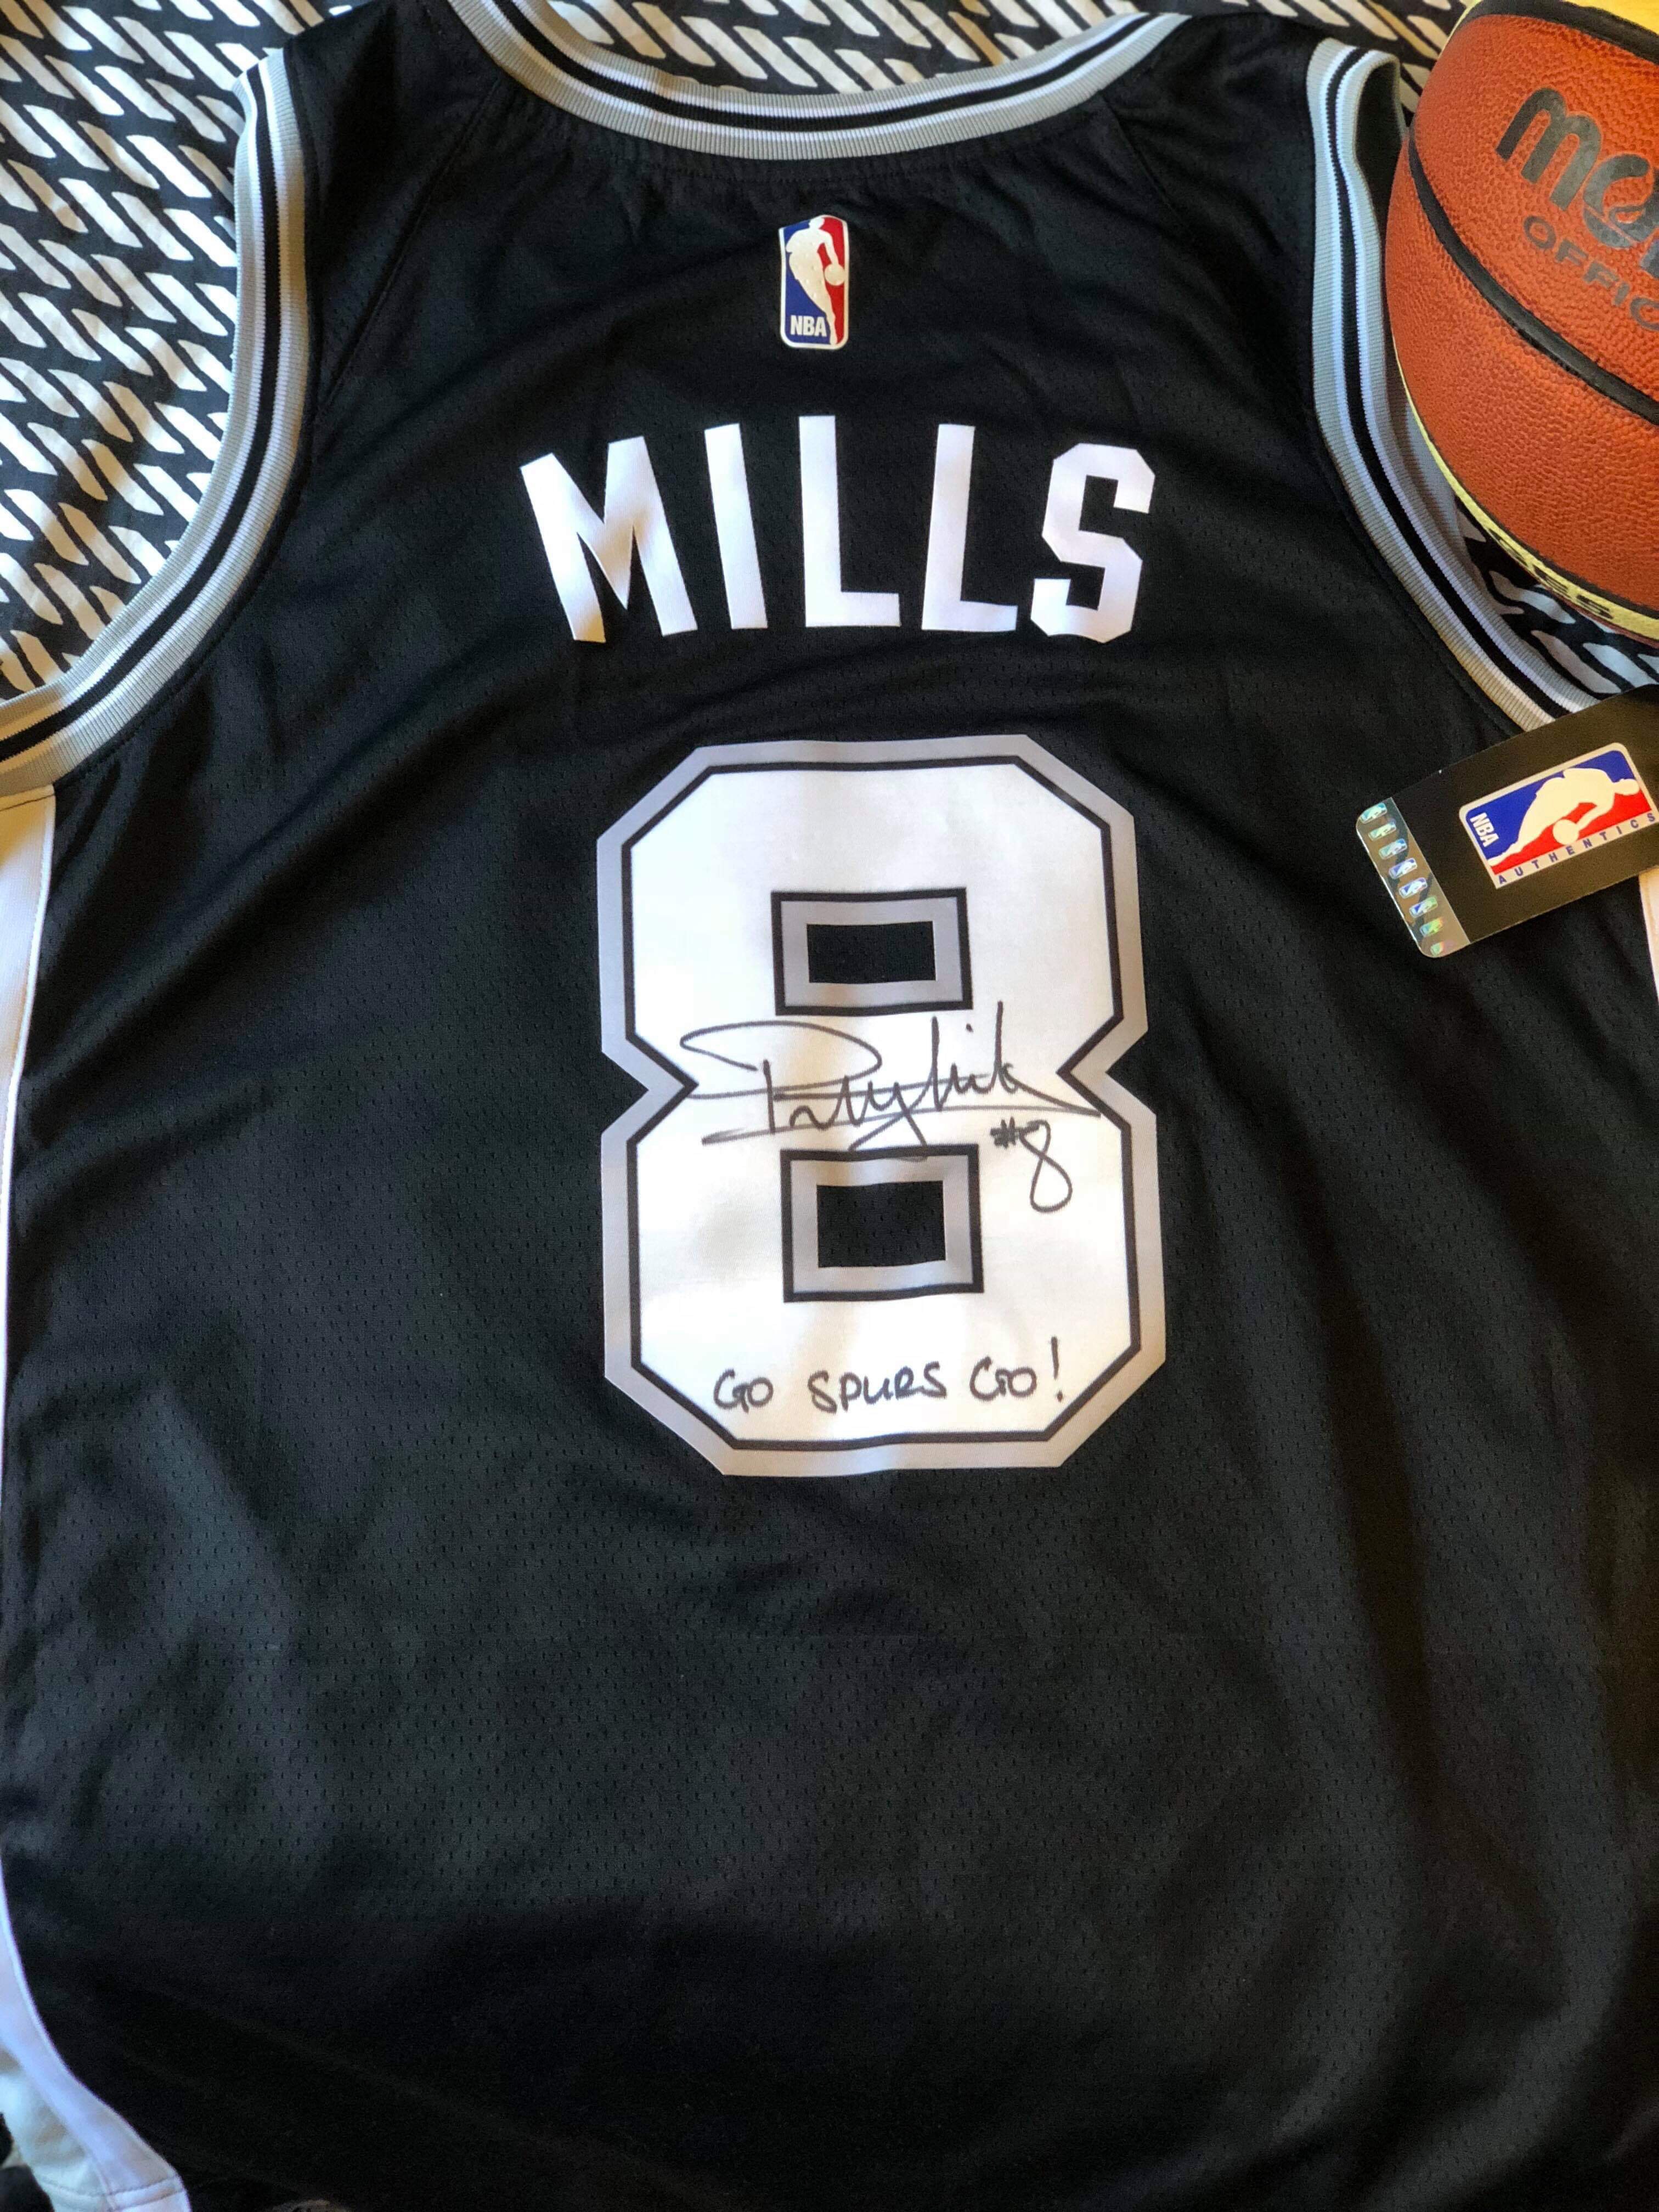 patty mills jersey